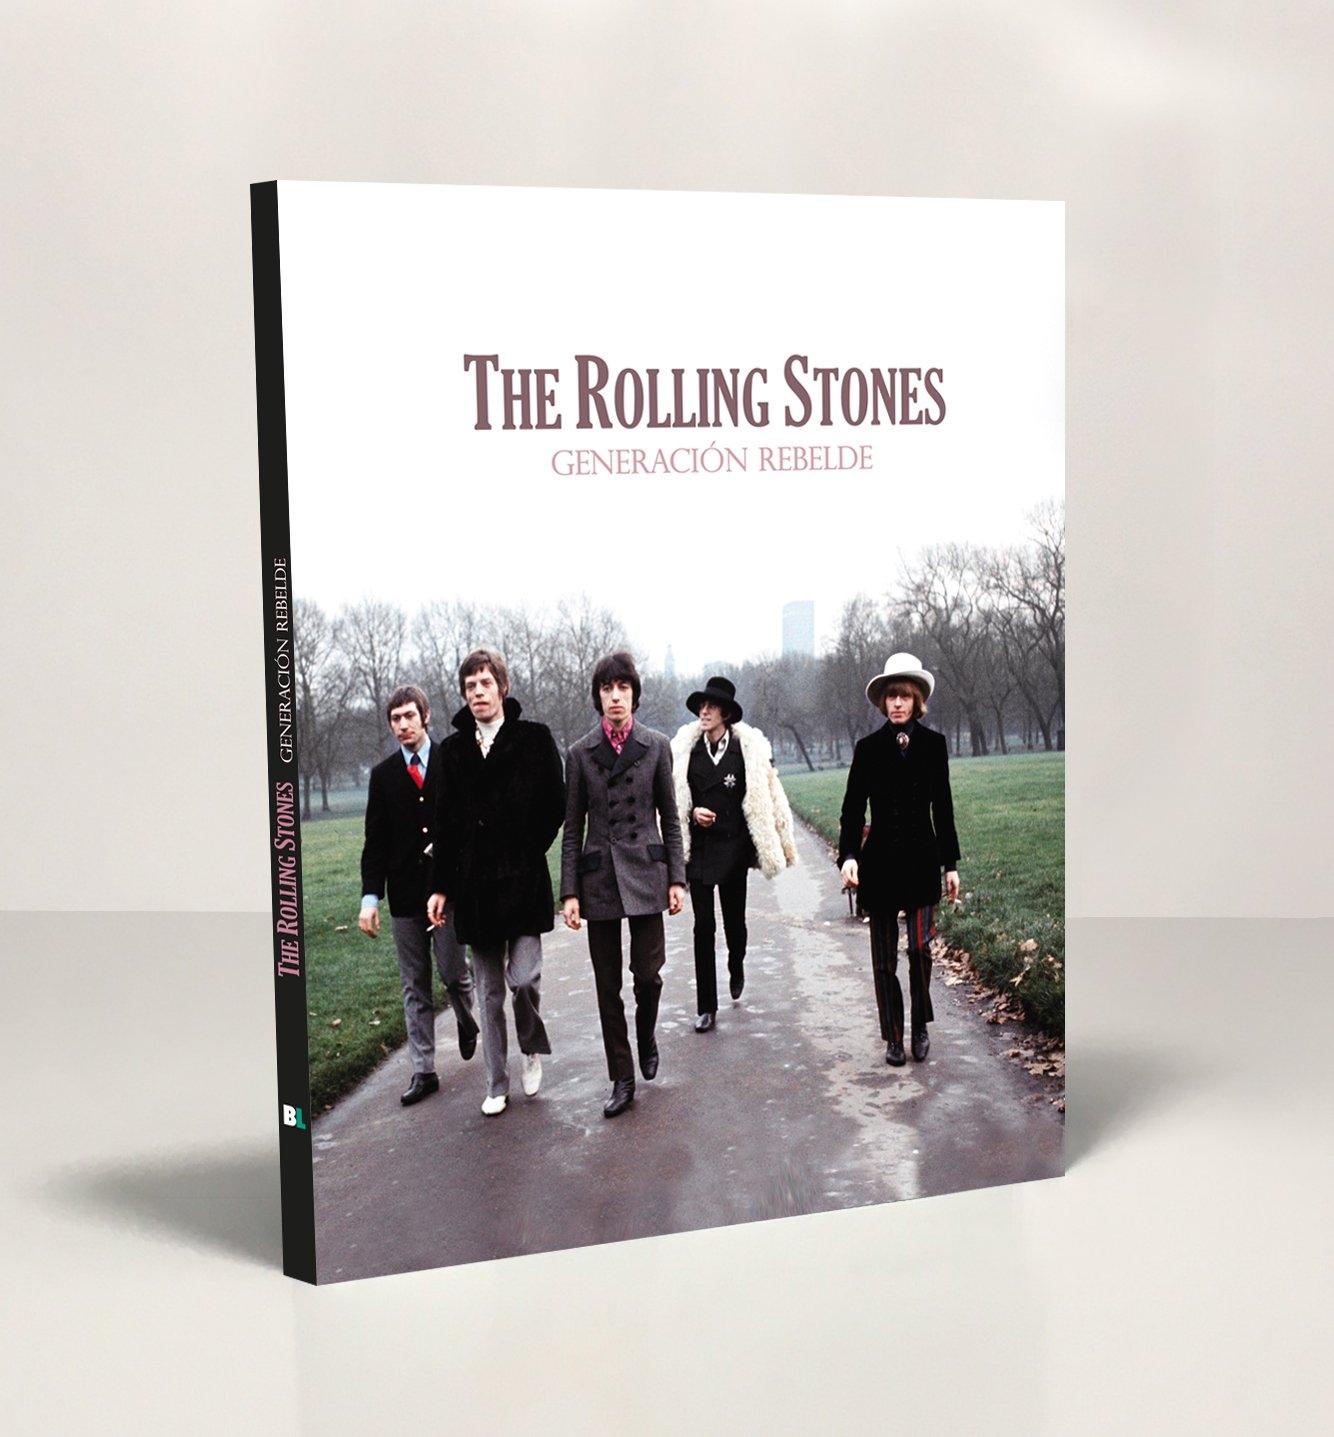 The Rolling Stones "Generación rebelde"